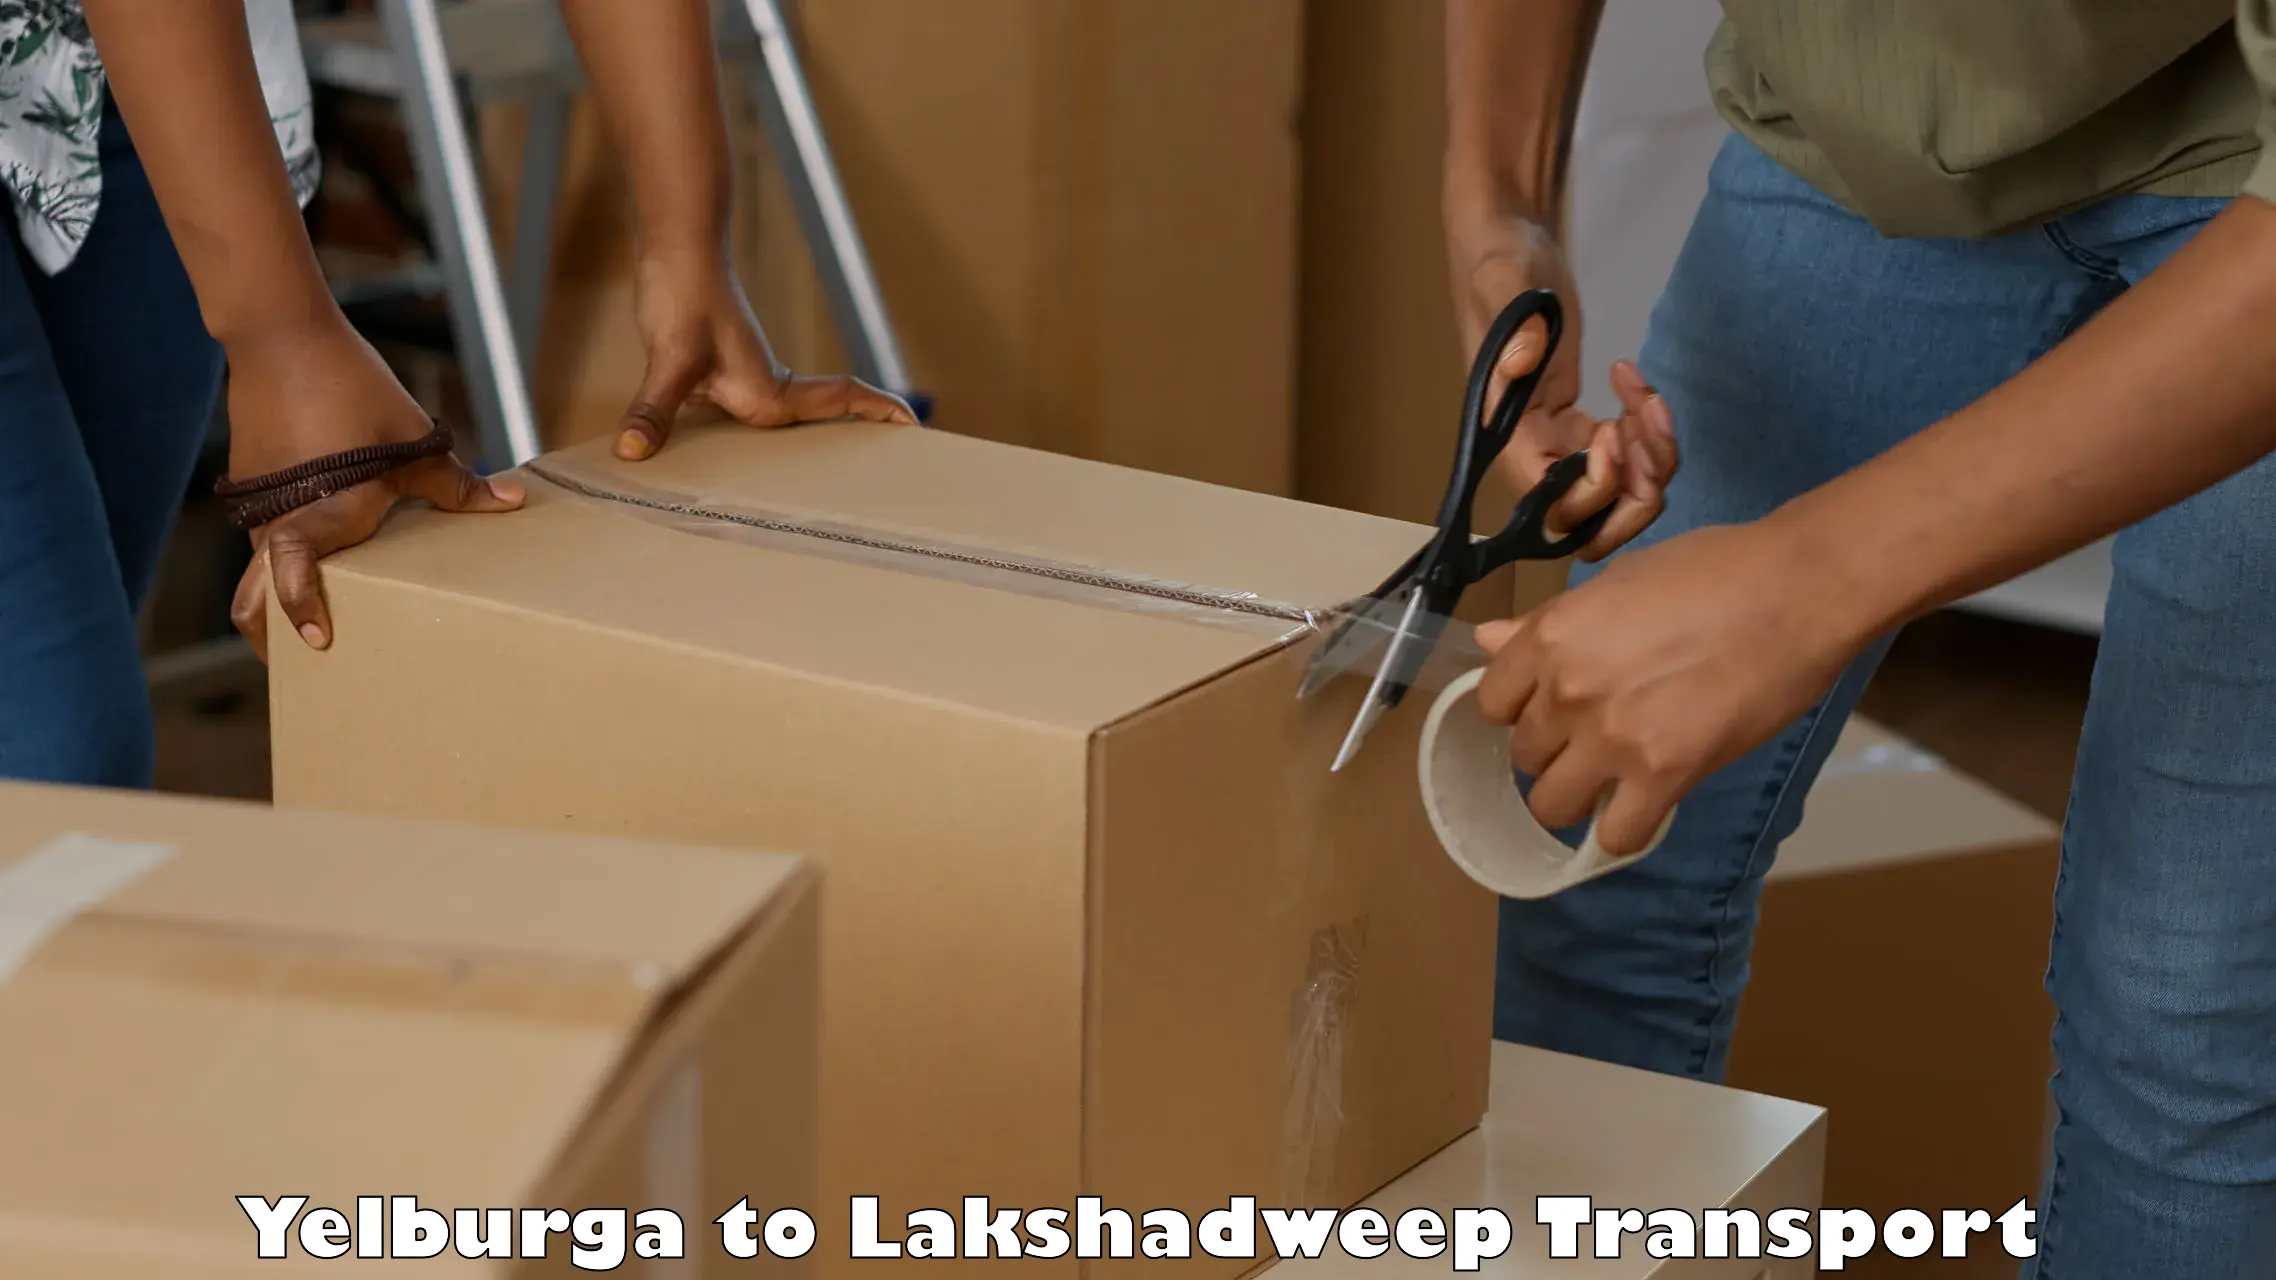 Transport in sharing in Yelburga to Lakshadweep